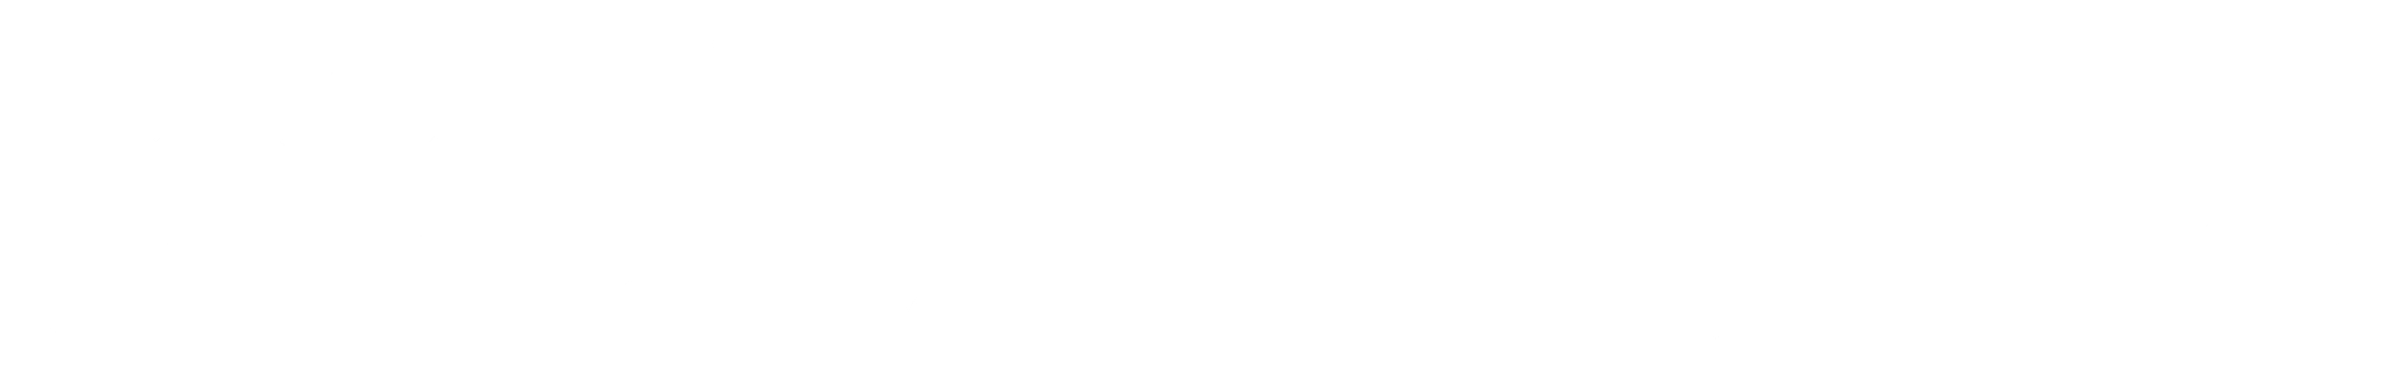 CompUSA Logo - Compusa Logo PNG Transparent & SVG Vector